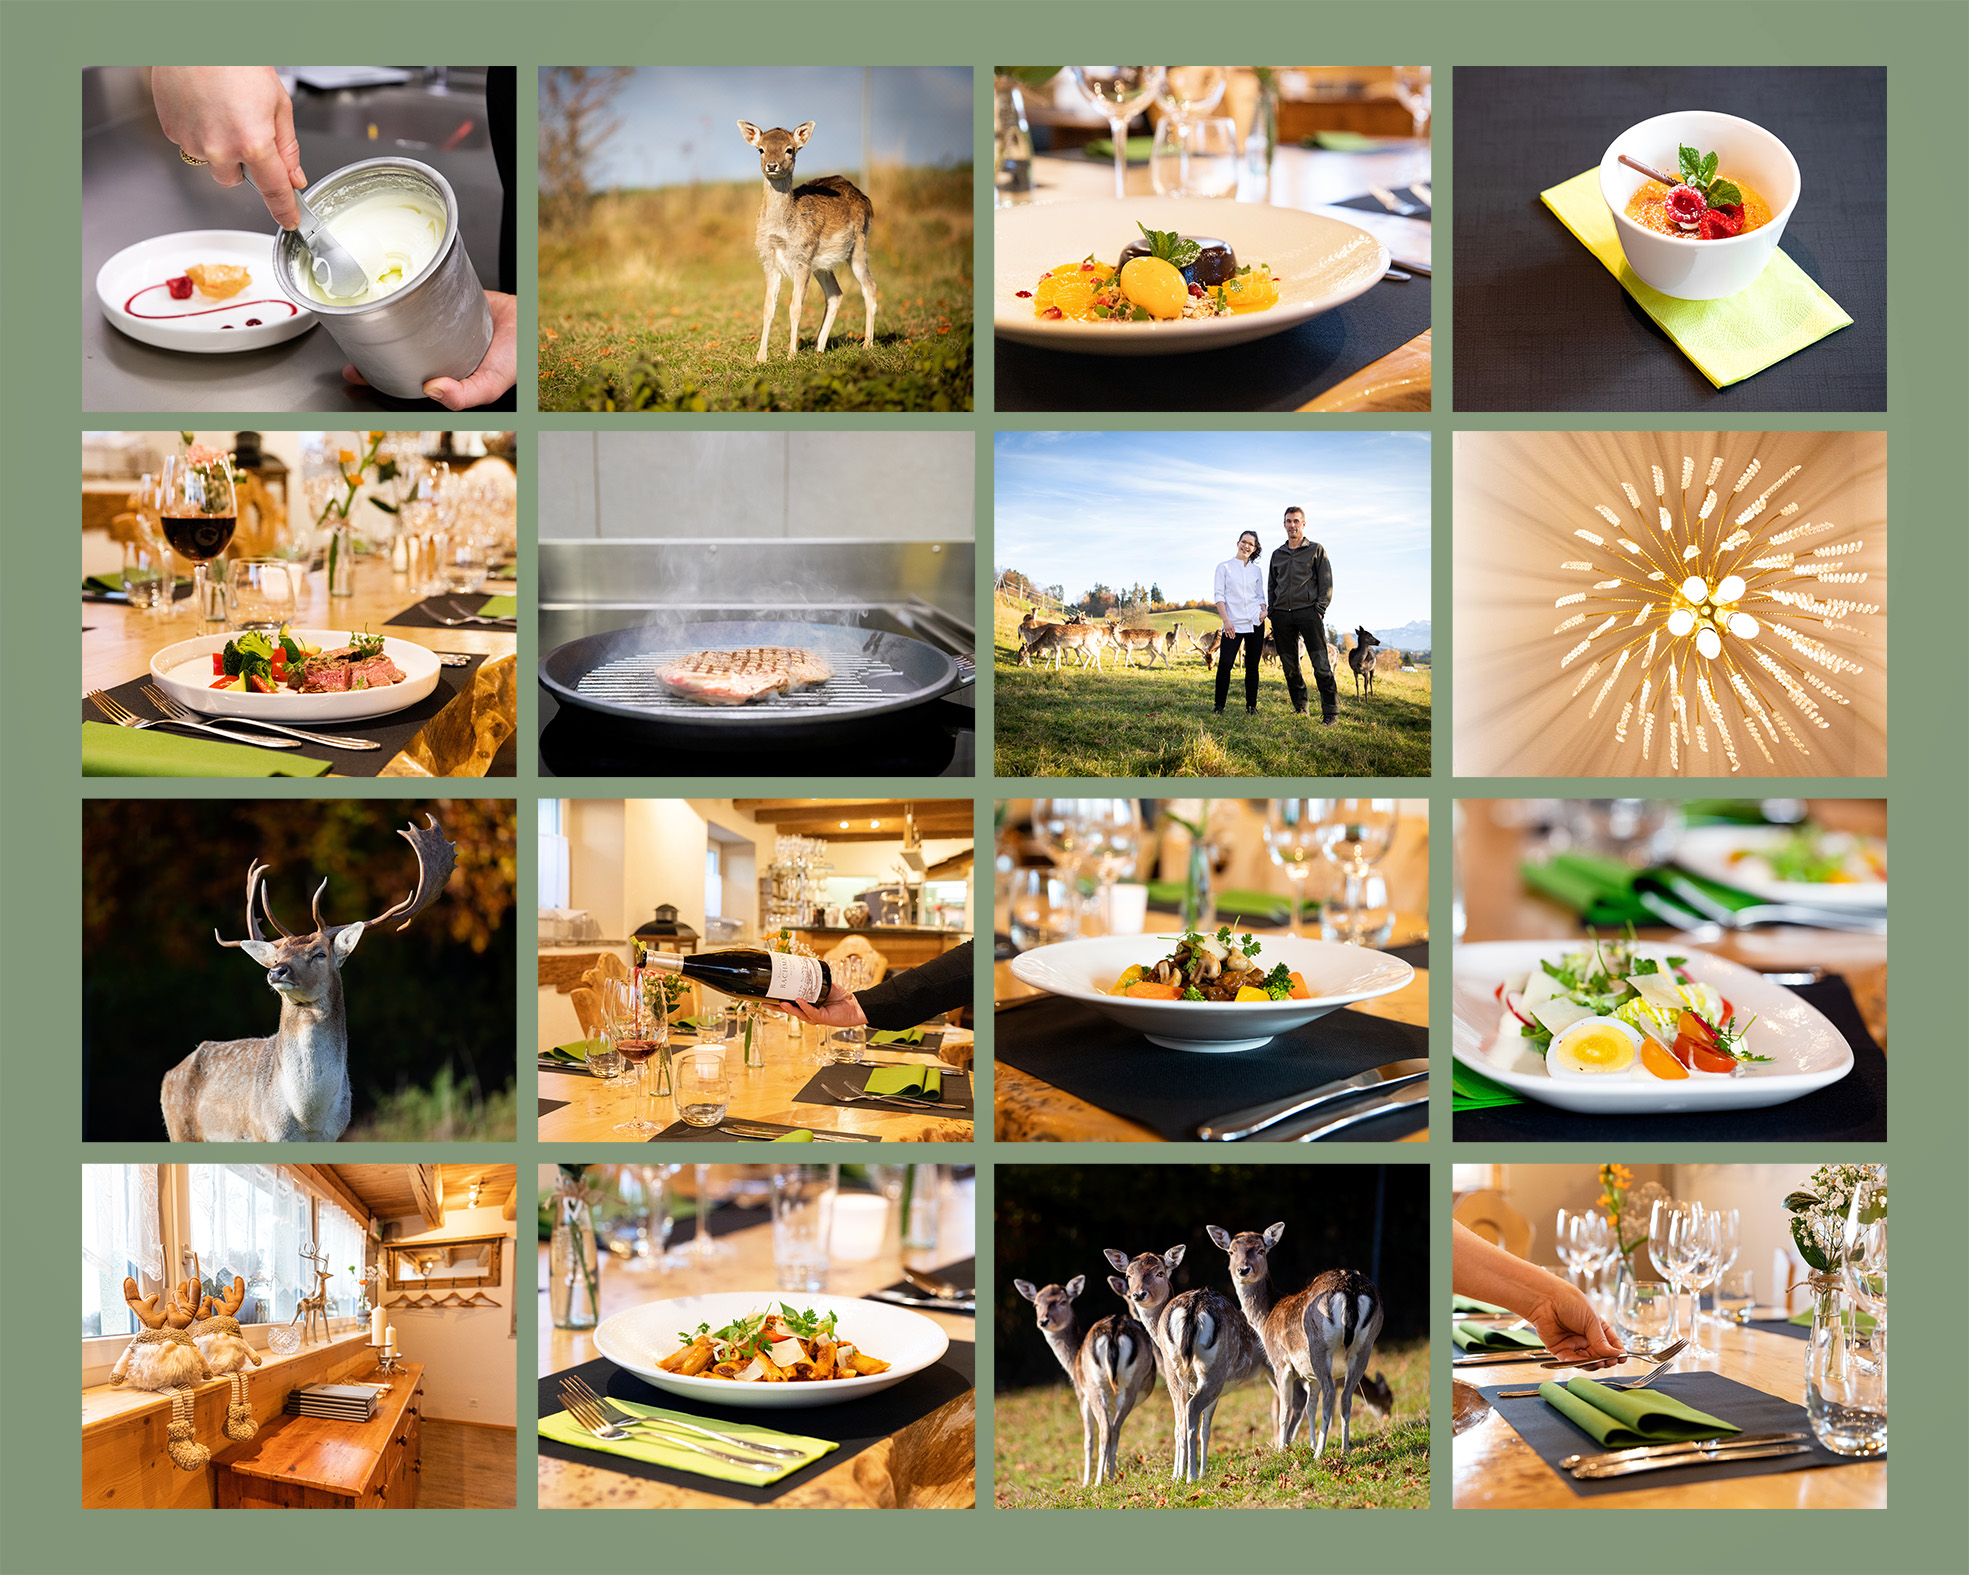 Fotos für das Restaurant Hirschfarm - Fotografiert von GoClick - Referenz